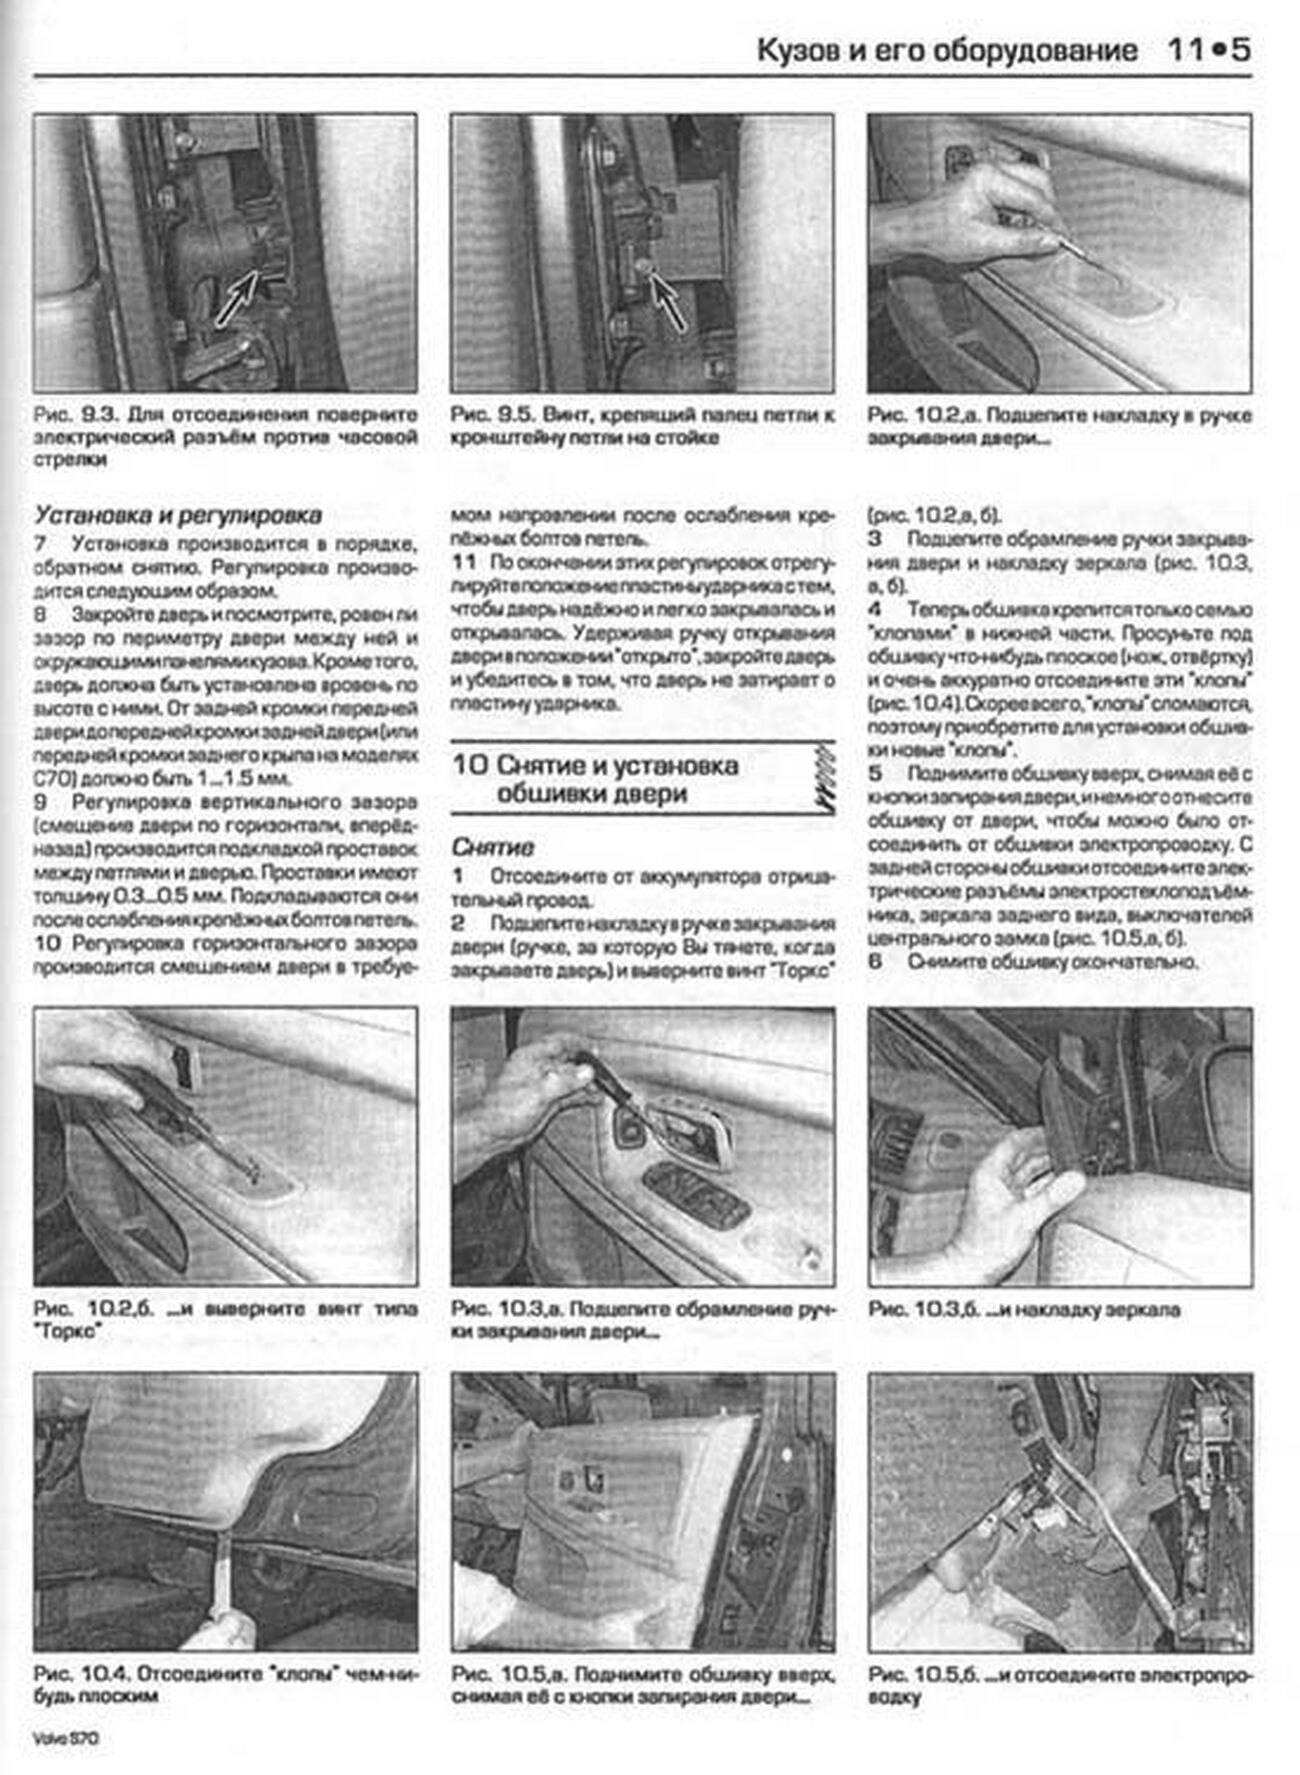 Книга: VOLVO S70 / V70 / C70 (б) 1996-1999 г.в., рем., экспл., то | Алфамер Паблишинг